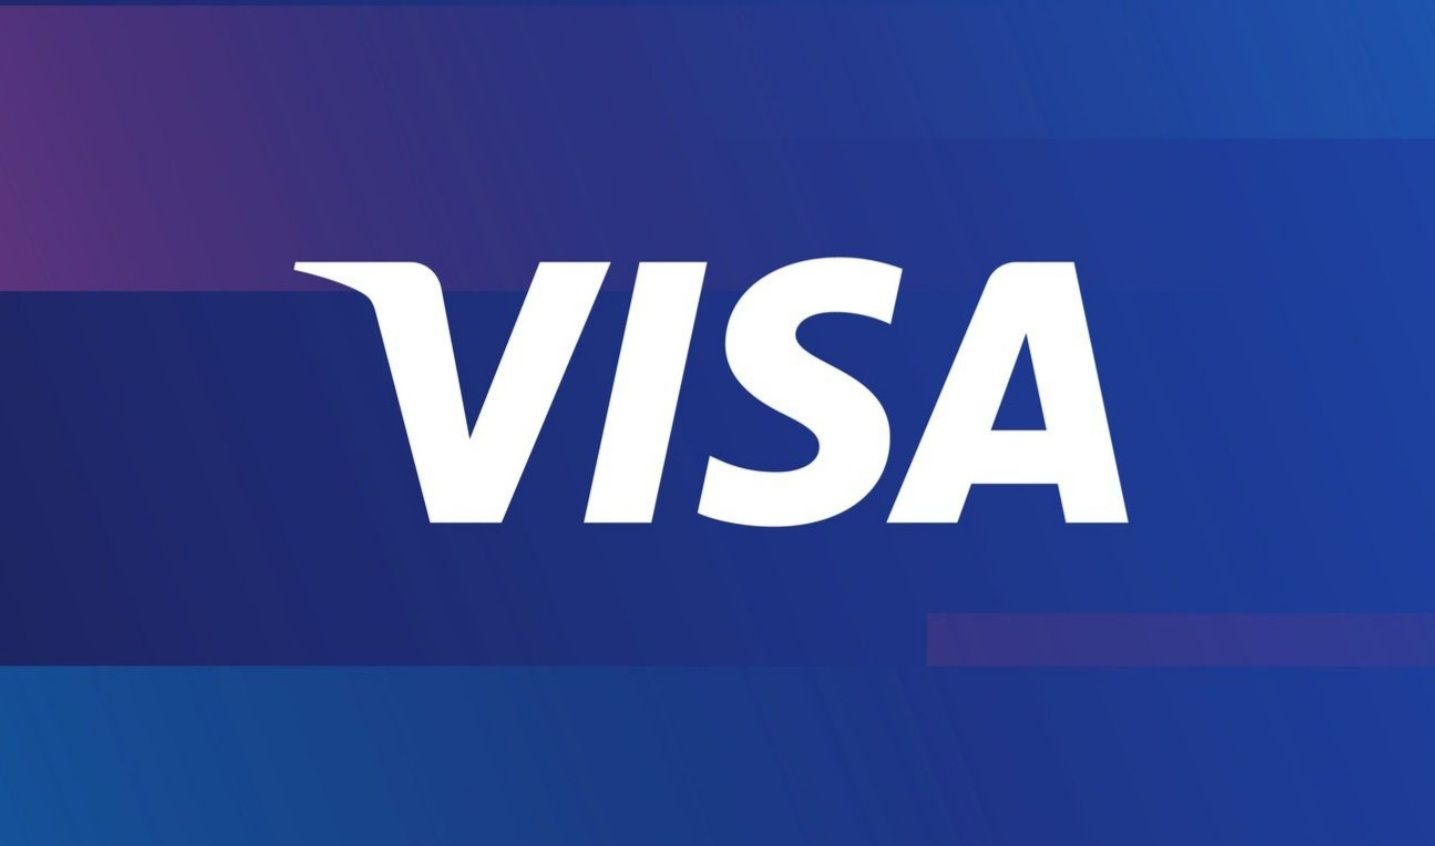 Visa resmi menandatangani nota kesepahaman dengan Kamar Dagang dan Industri (Kadin) Indonesia dalam hal peningkatkan literasi keuangan dan bisnis digital di Indonesia.